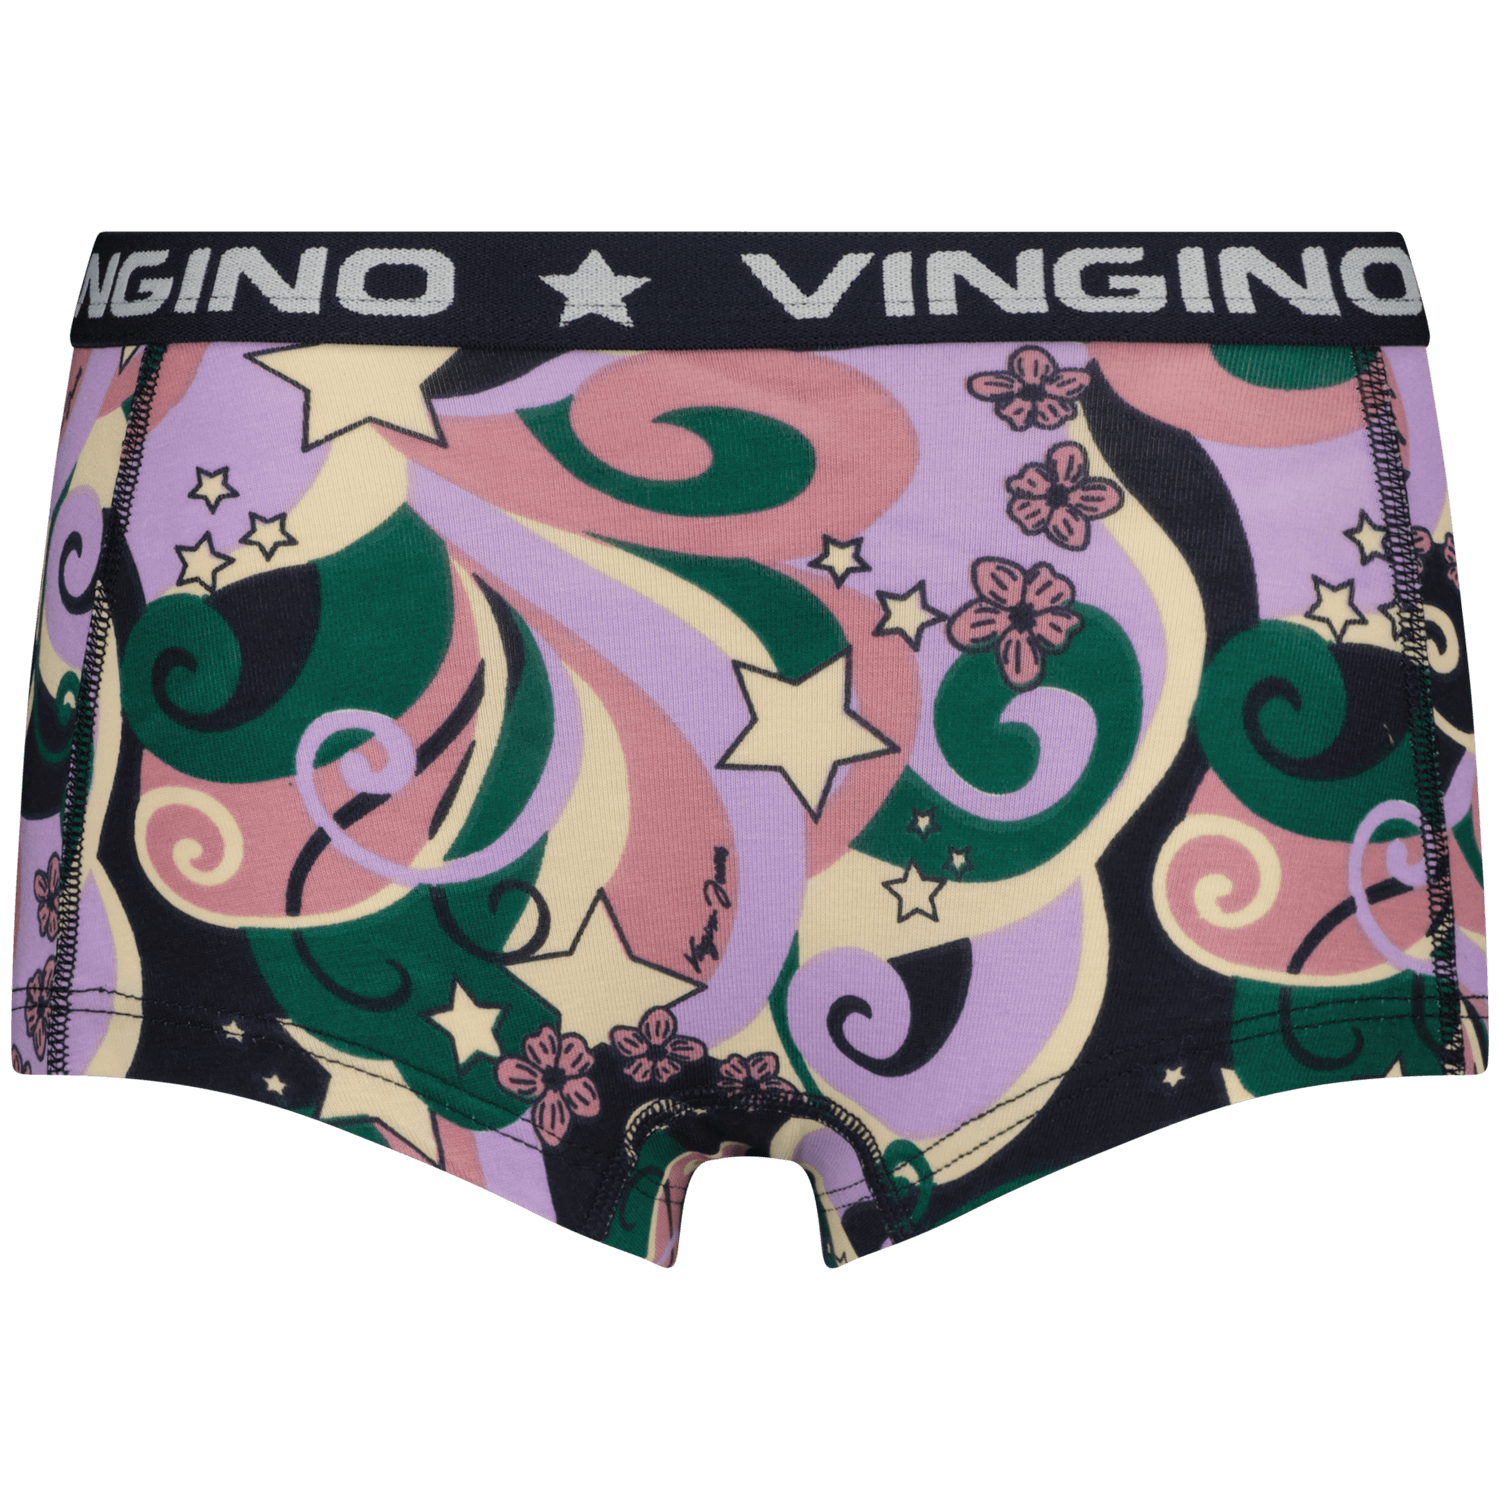 VINGINO Hipster G234 7pack